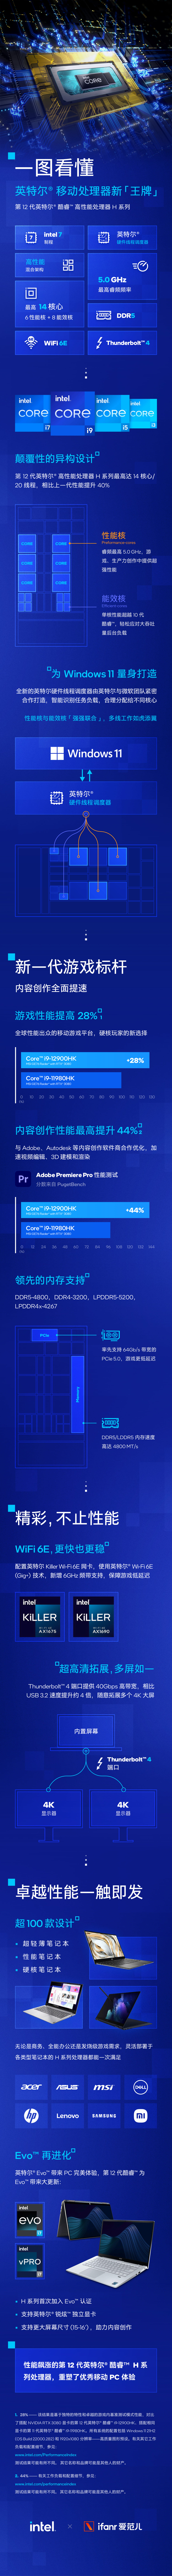 intel - Quanto è veloce il processore mobile Intel che ha subito un cambiamento importante?